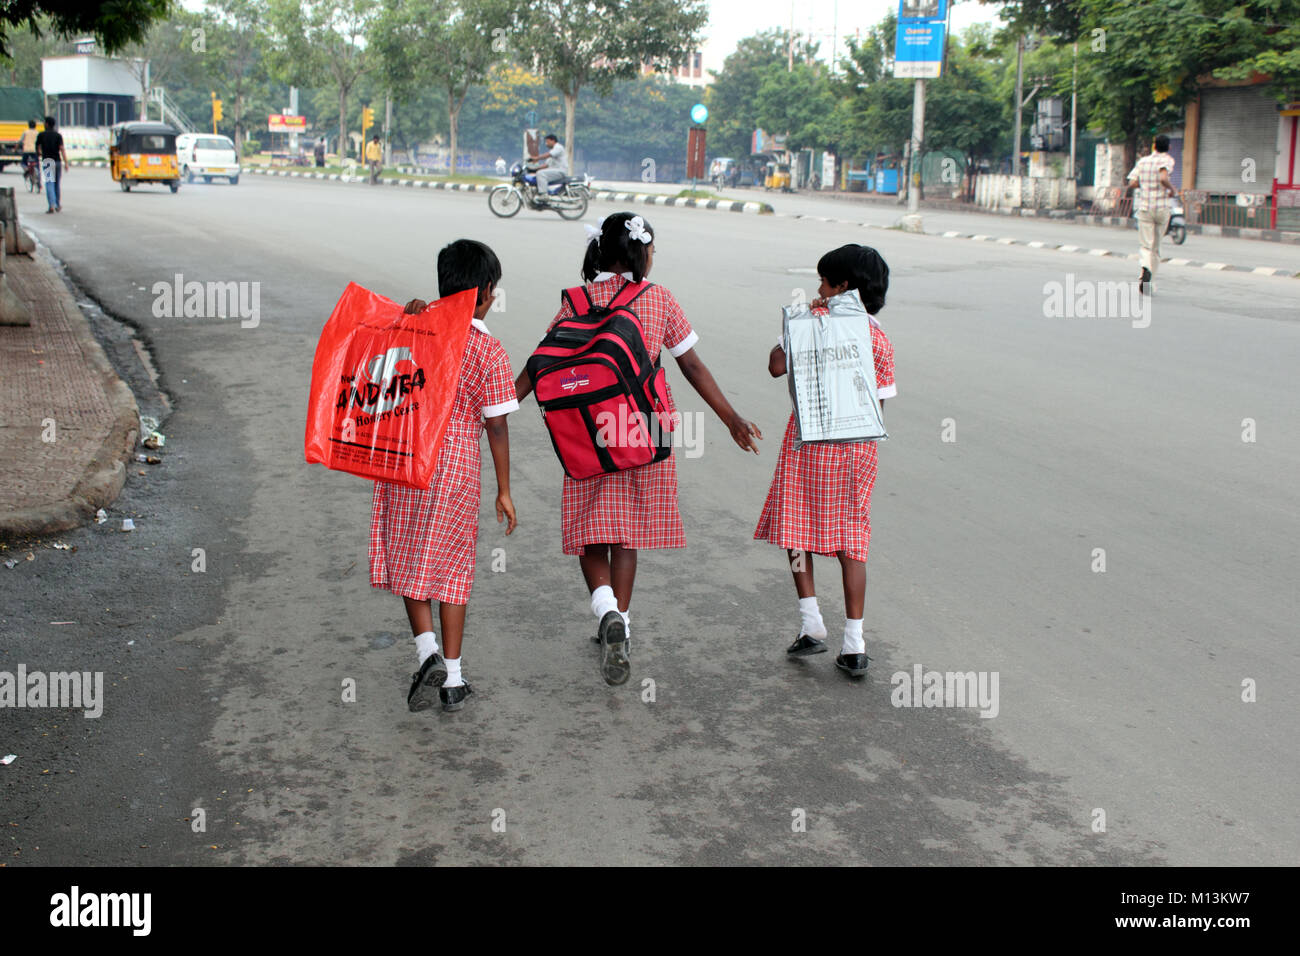 Las colegialas indio recorriendo la calle a la escuela Foto de stock